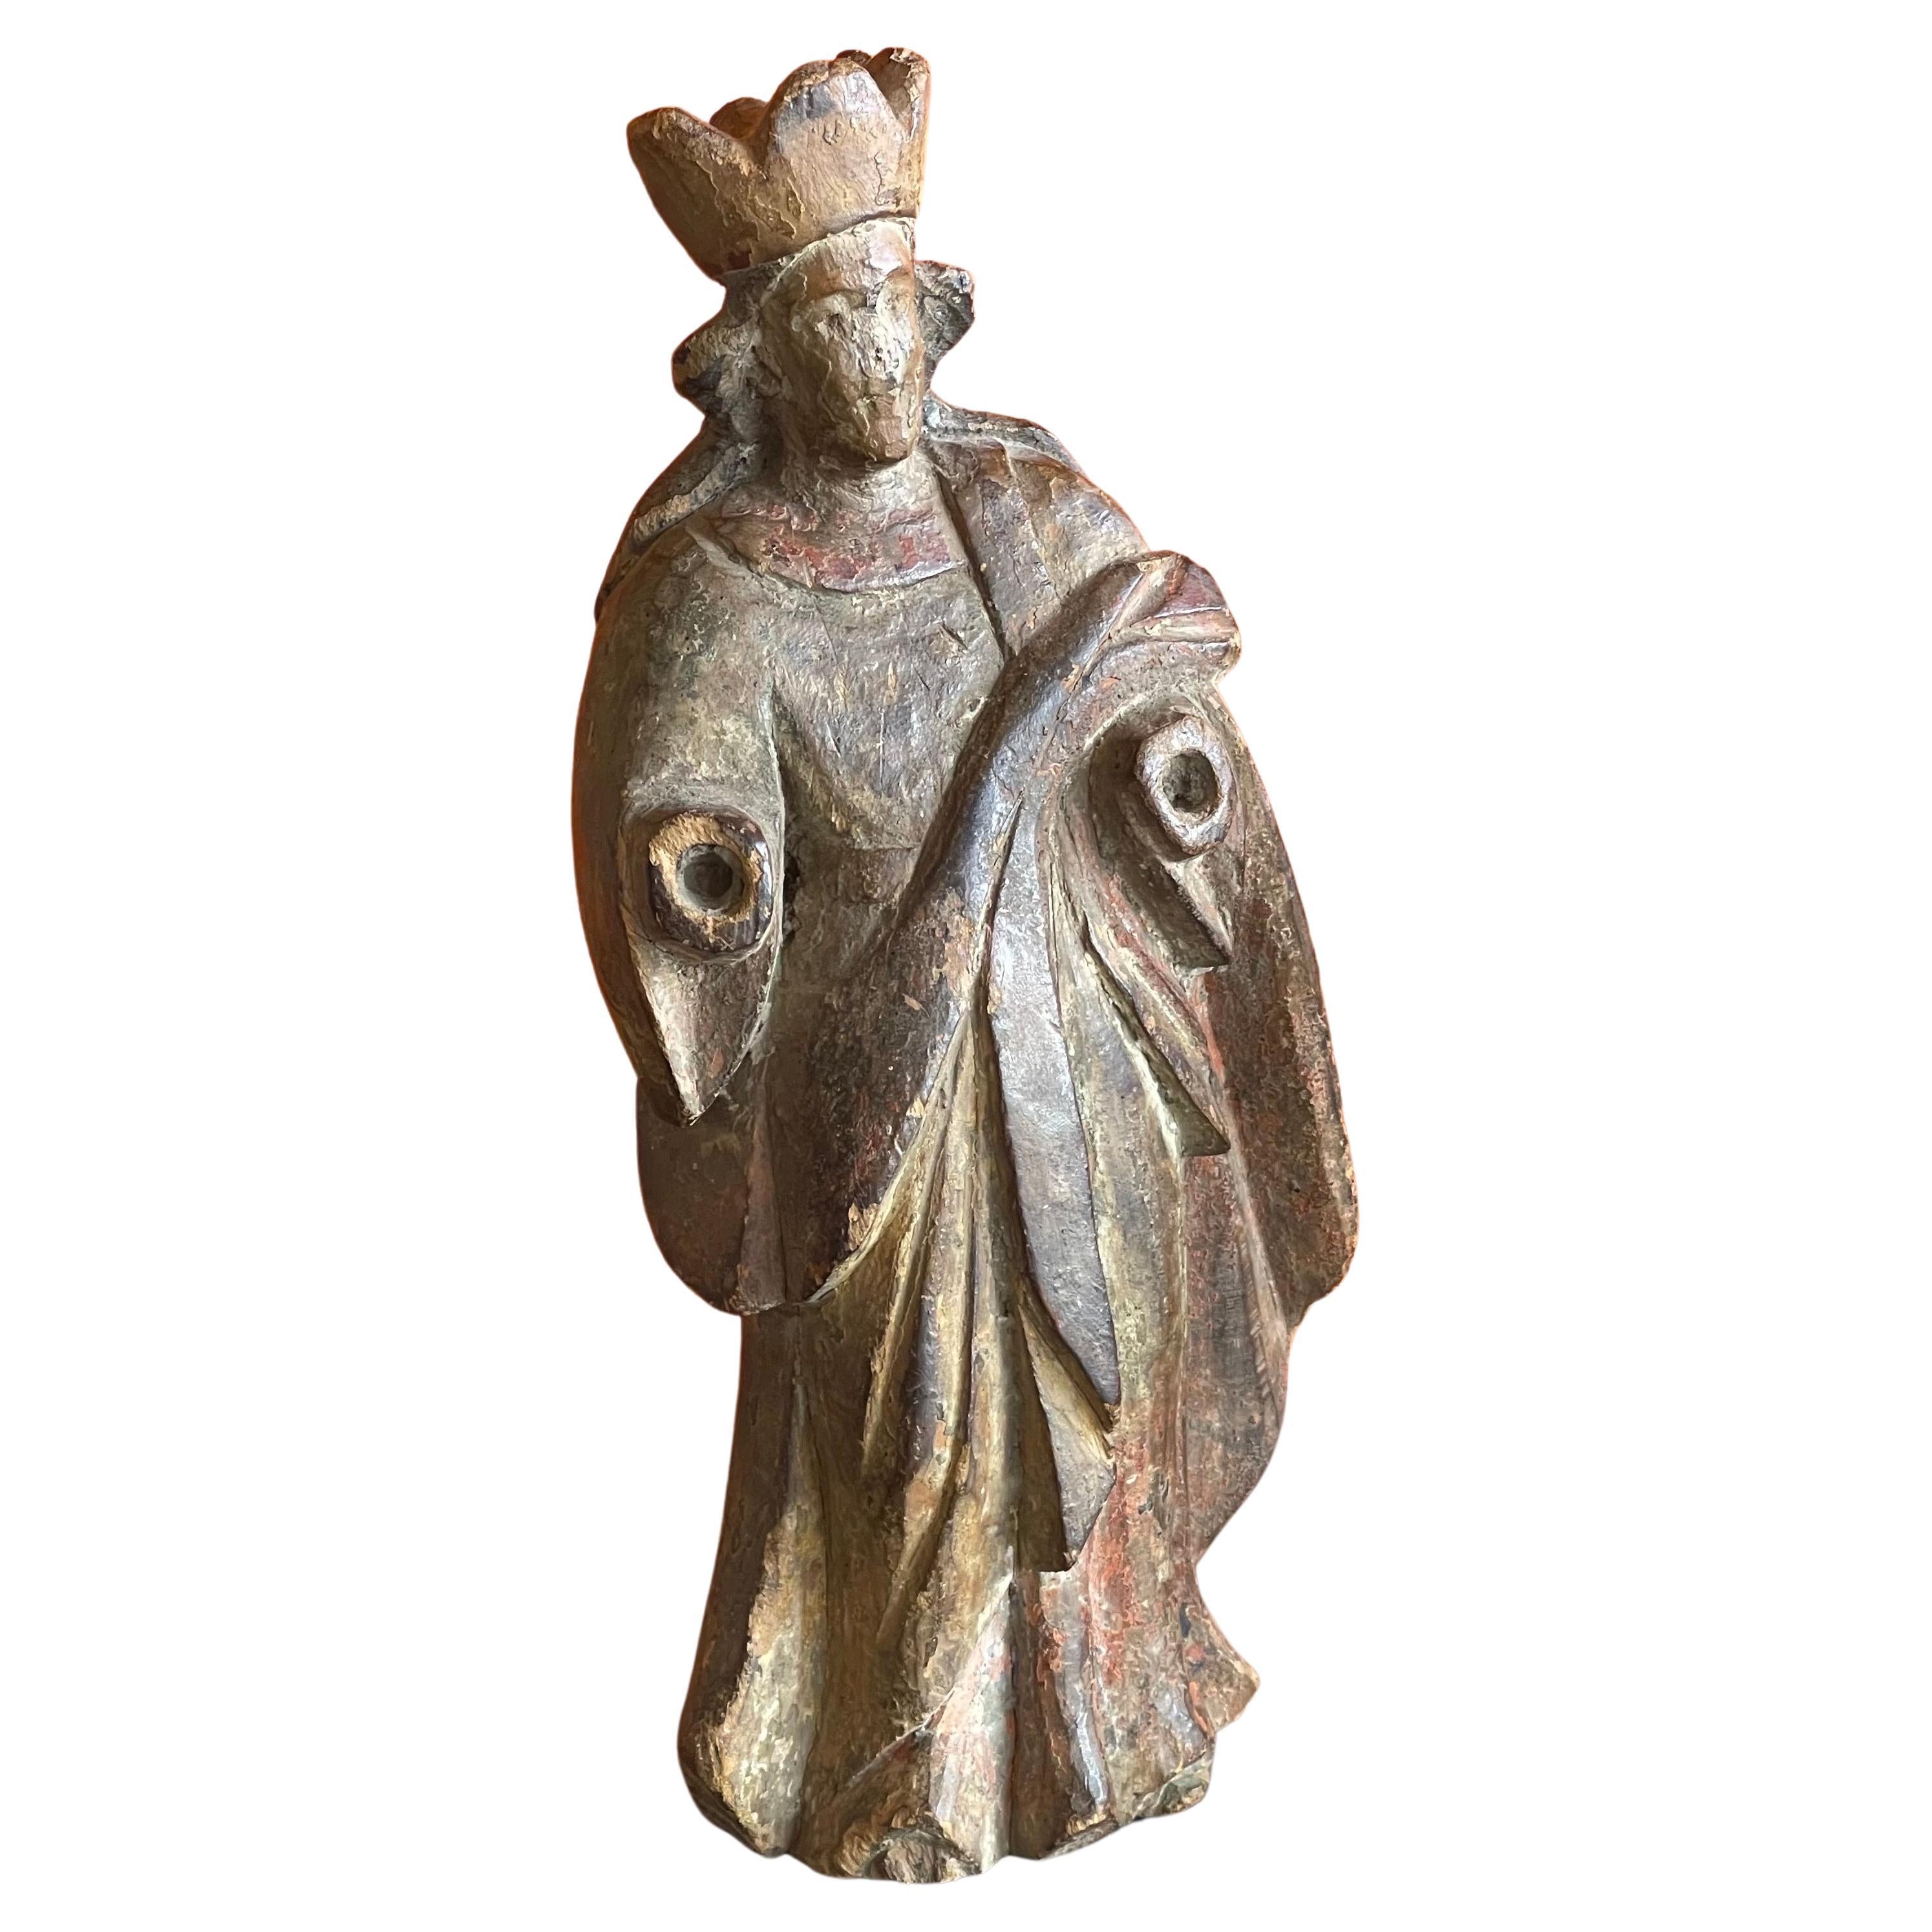 Sculpture de santos religieux polychrome, vers les années 1800. La pièce est sculptée à la main dans un bois tendre avec une peinture originale et une finition polychrome sur une base en bois. La pièce est en bon état pour son âge et mesure 3,5 